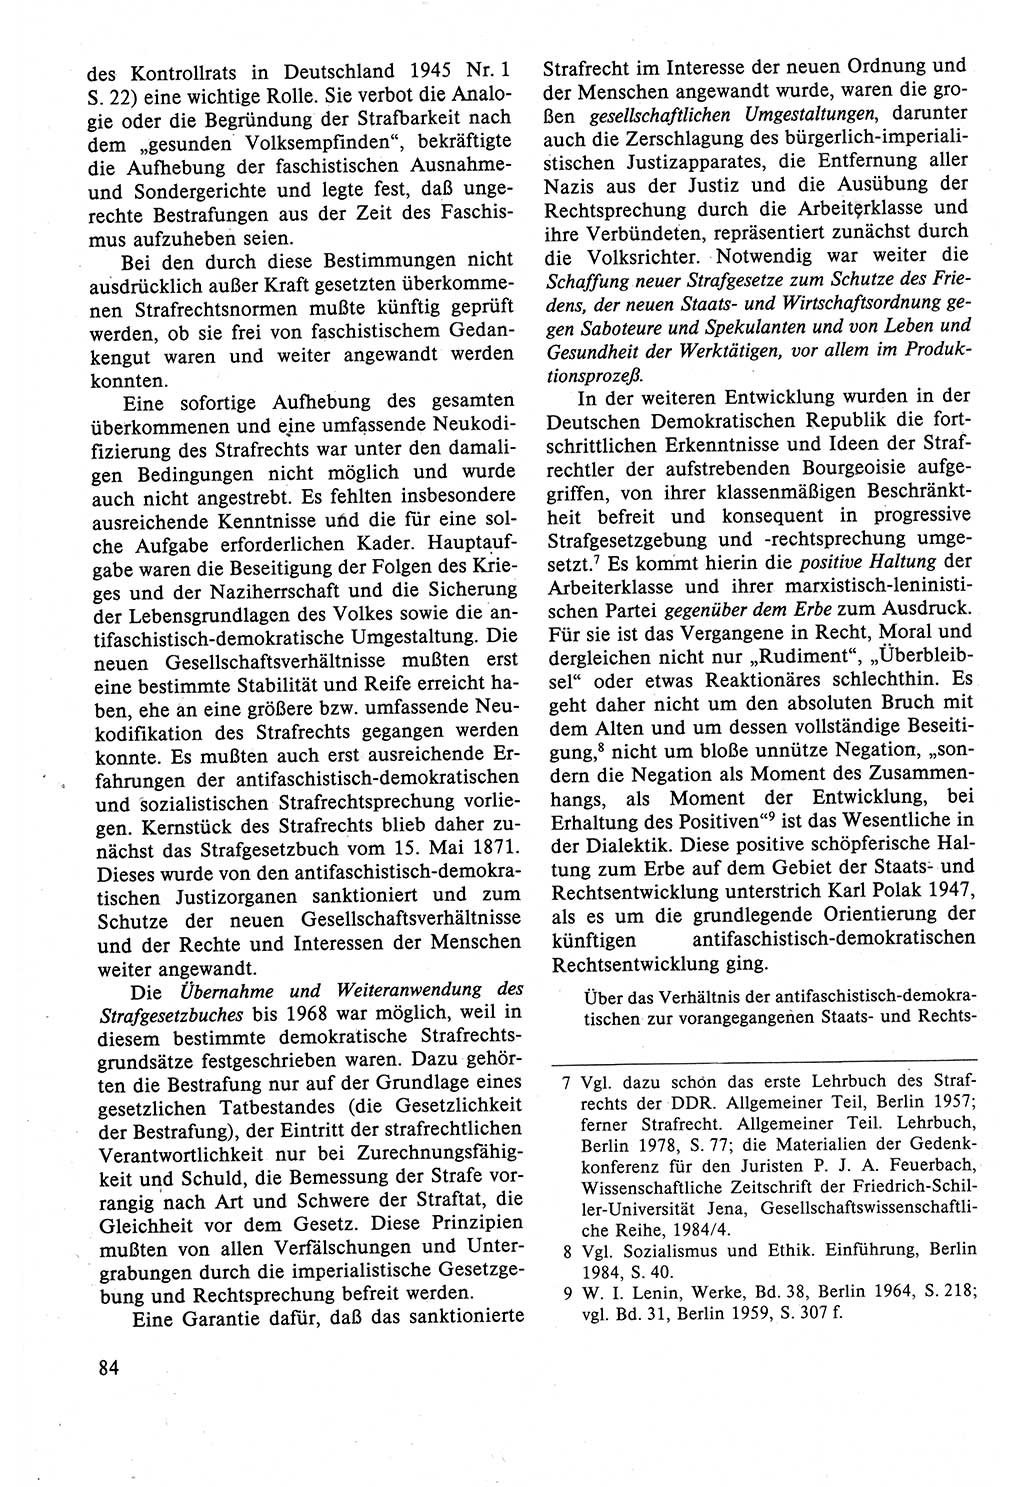 Strafrecht der DDR (Deutsche Demokratische Republik), Lehrbuch 1988, Seite 84 (Strafr. DDR Lb. 1988, S. 84)